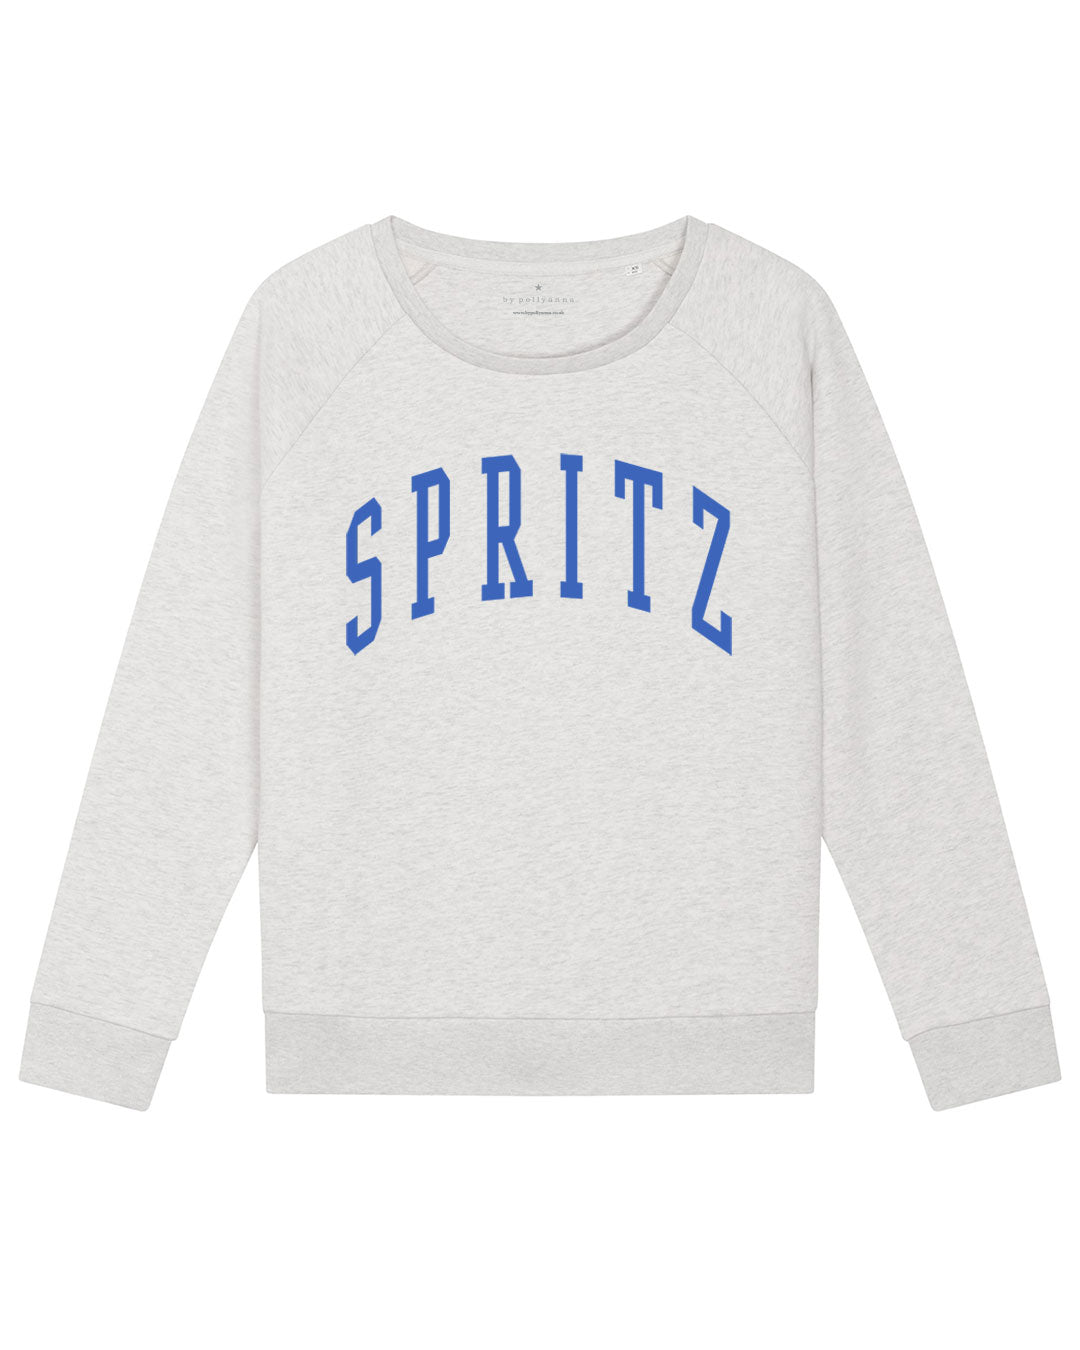 NEW Spritz Sweatshirt